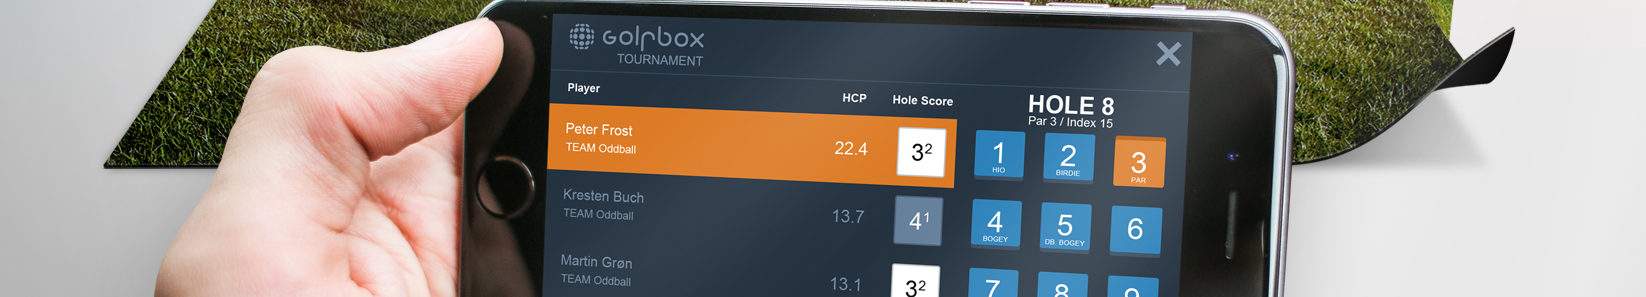 golfbox_mobile_scoring